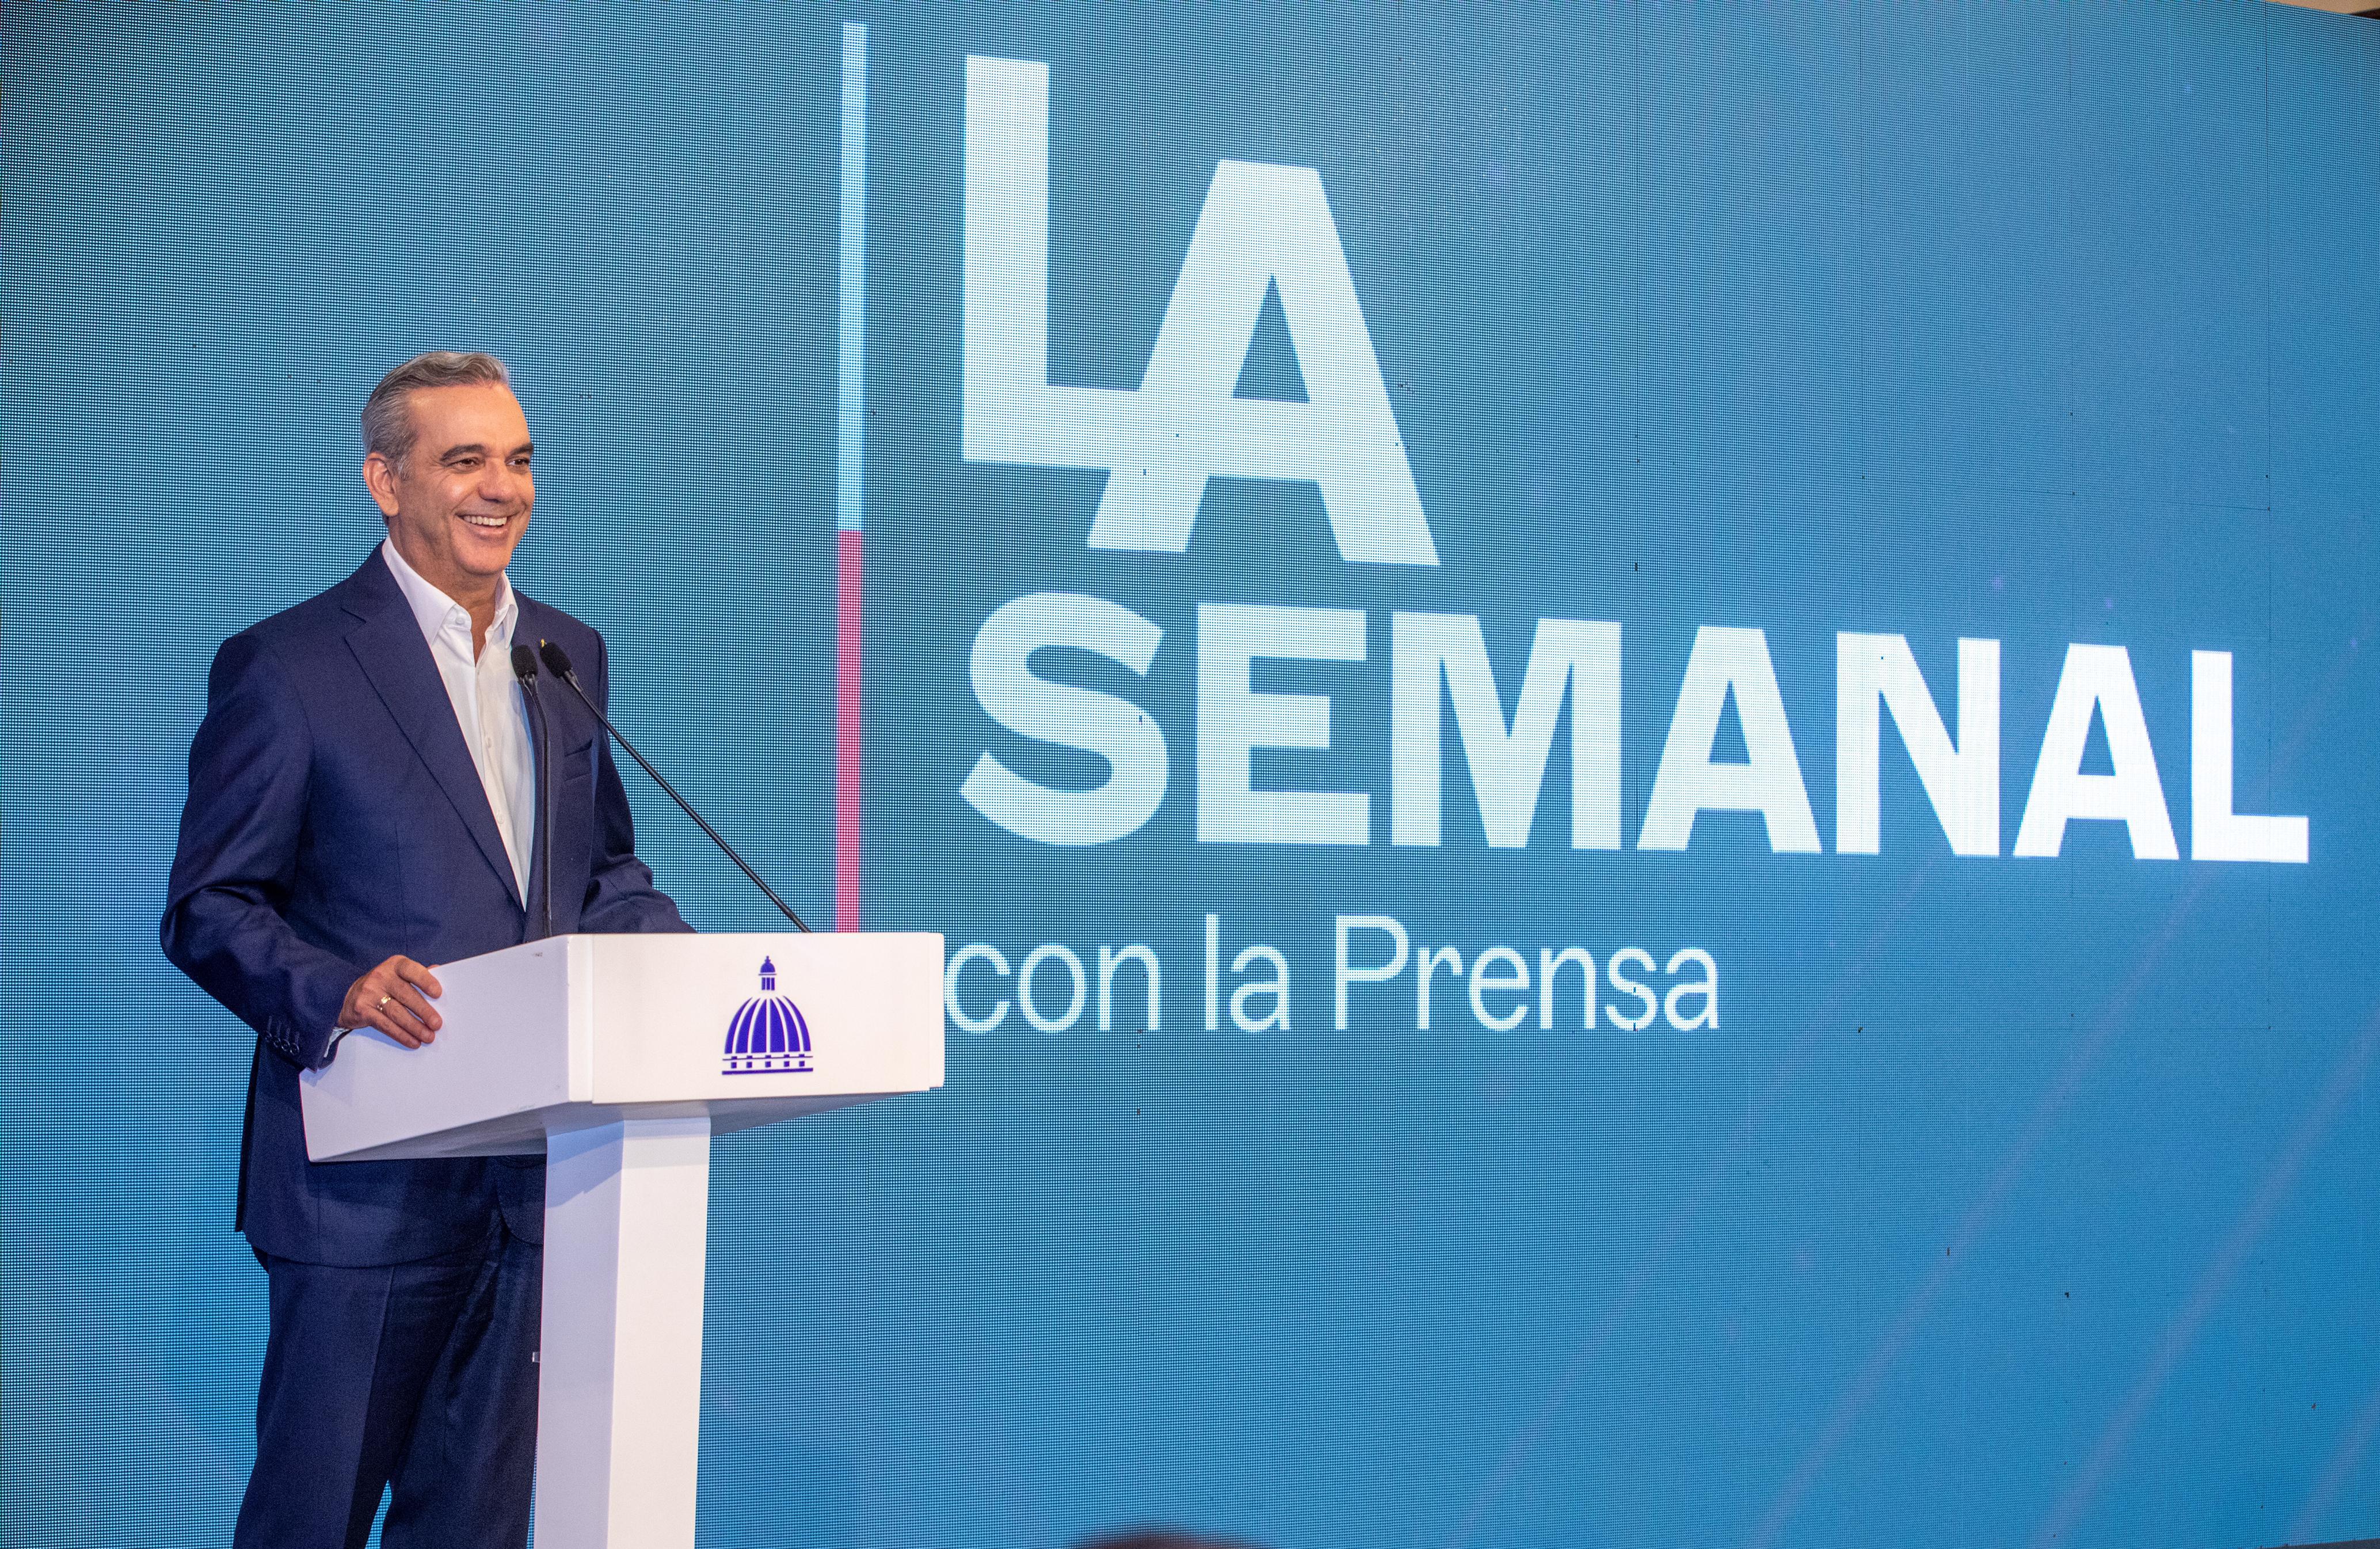 REPÚBLICA DOMINICANA: Presidente Abinader realizará este lunes encuentro LA Semanal con la Prensa, desde Santiago